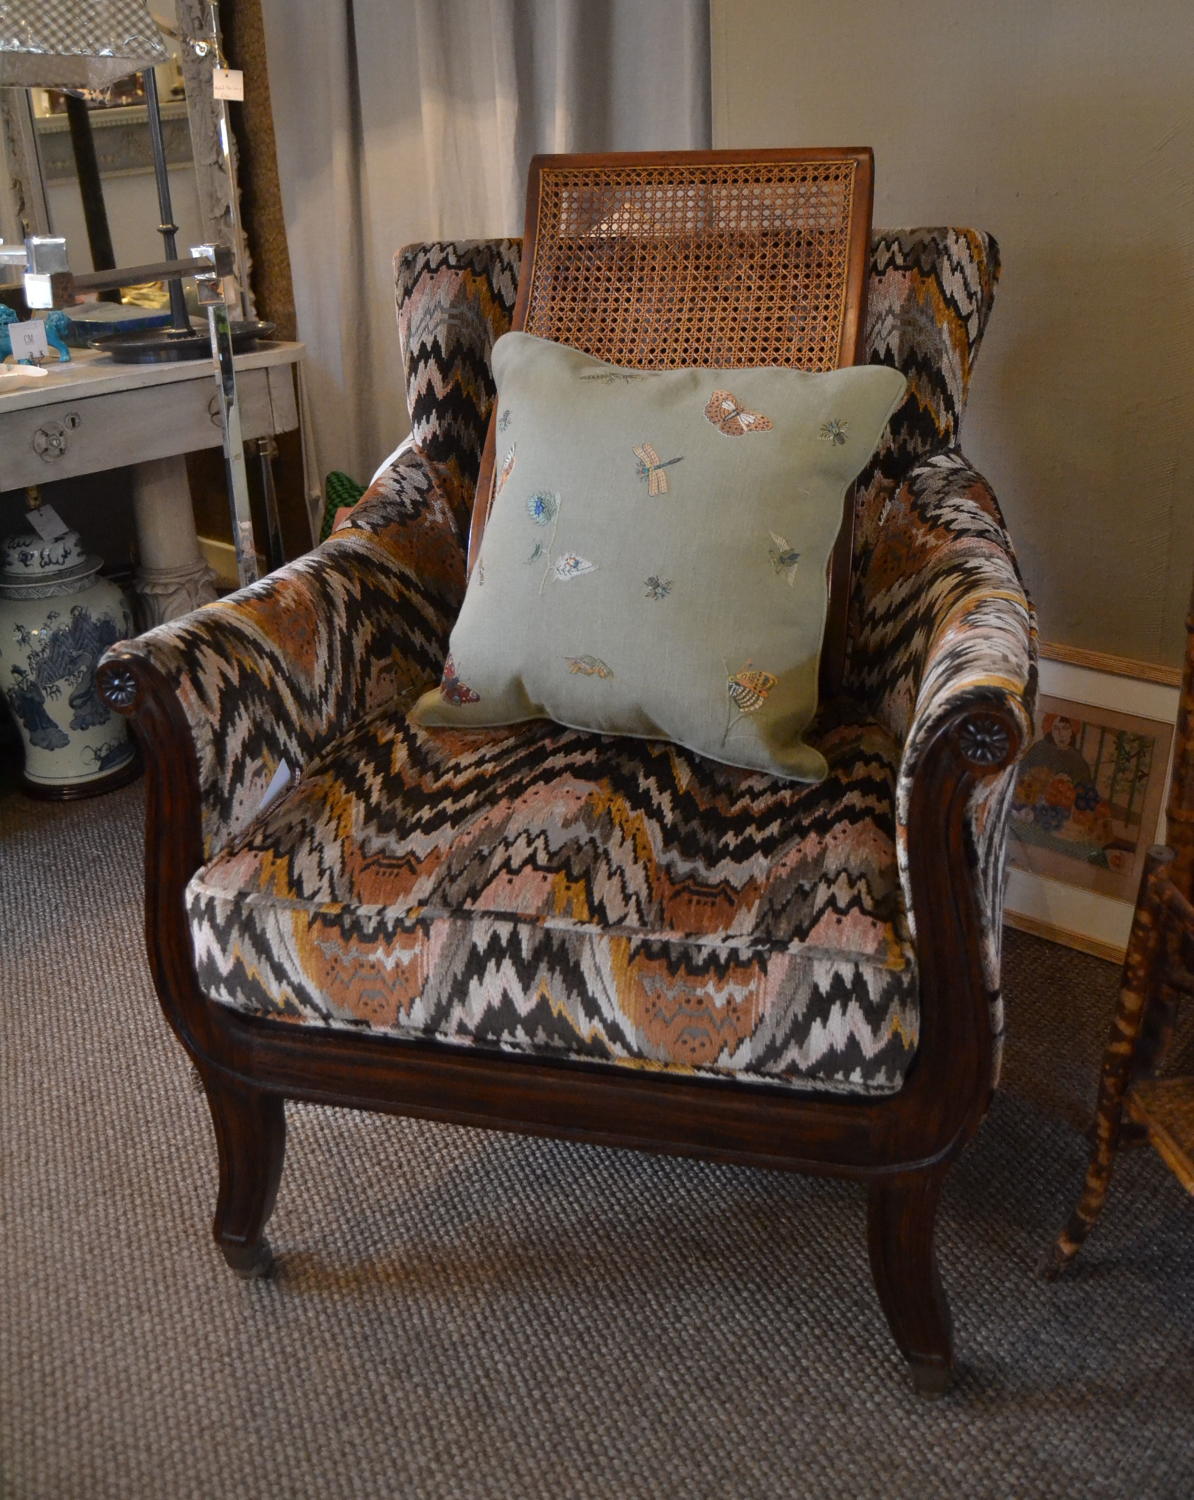 Regency Style Chair